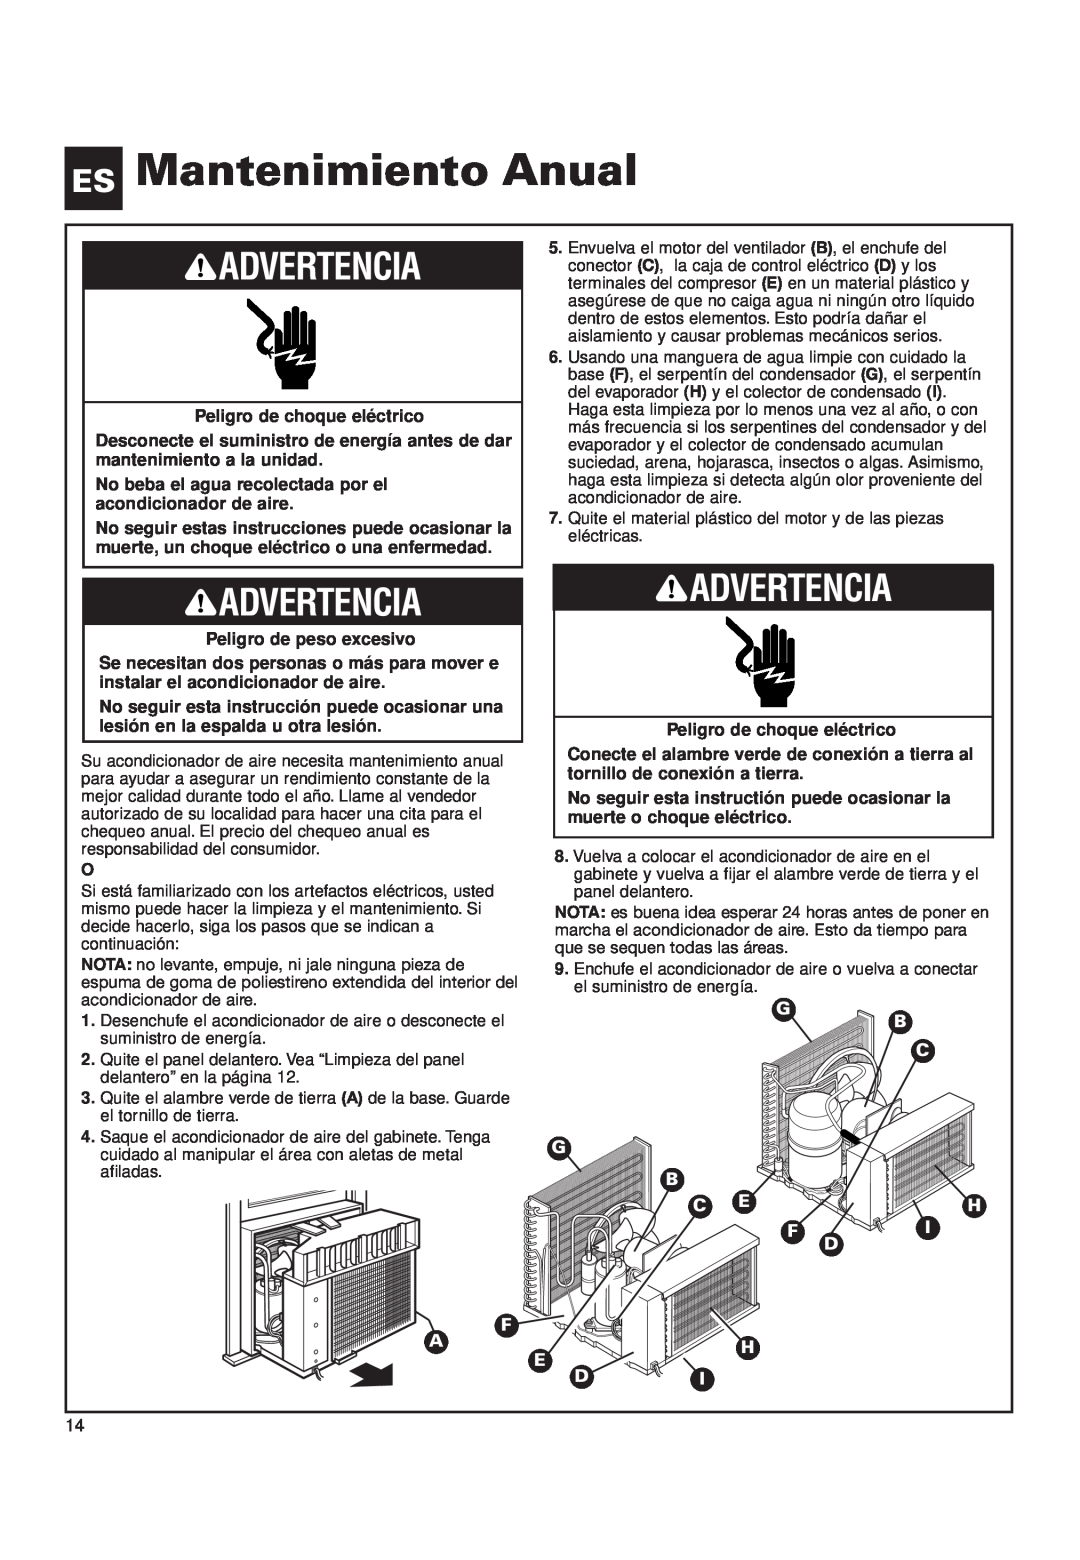 Whirlpool ACQ152XK0 manual ES Mantenimiento Anual, Advertencia, Peligro de choque eléctrico, Peligro de peso excesivo 